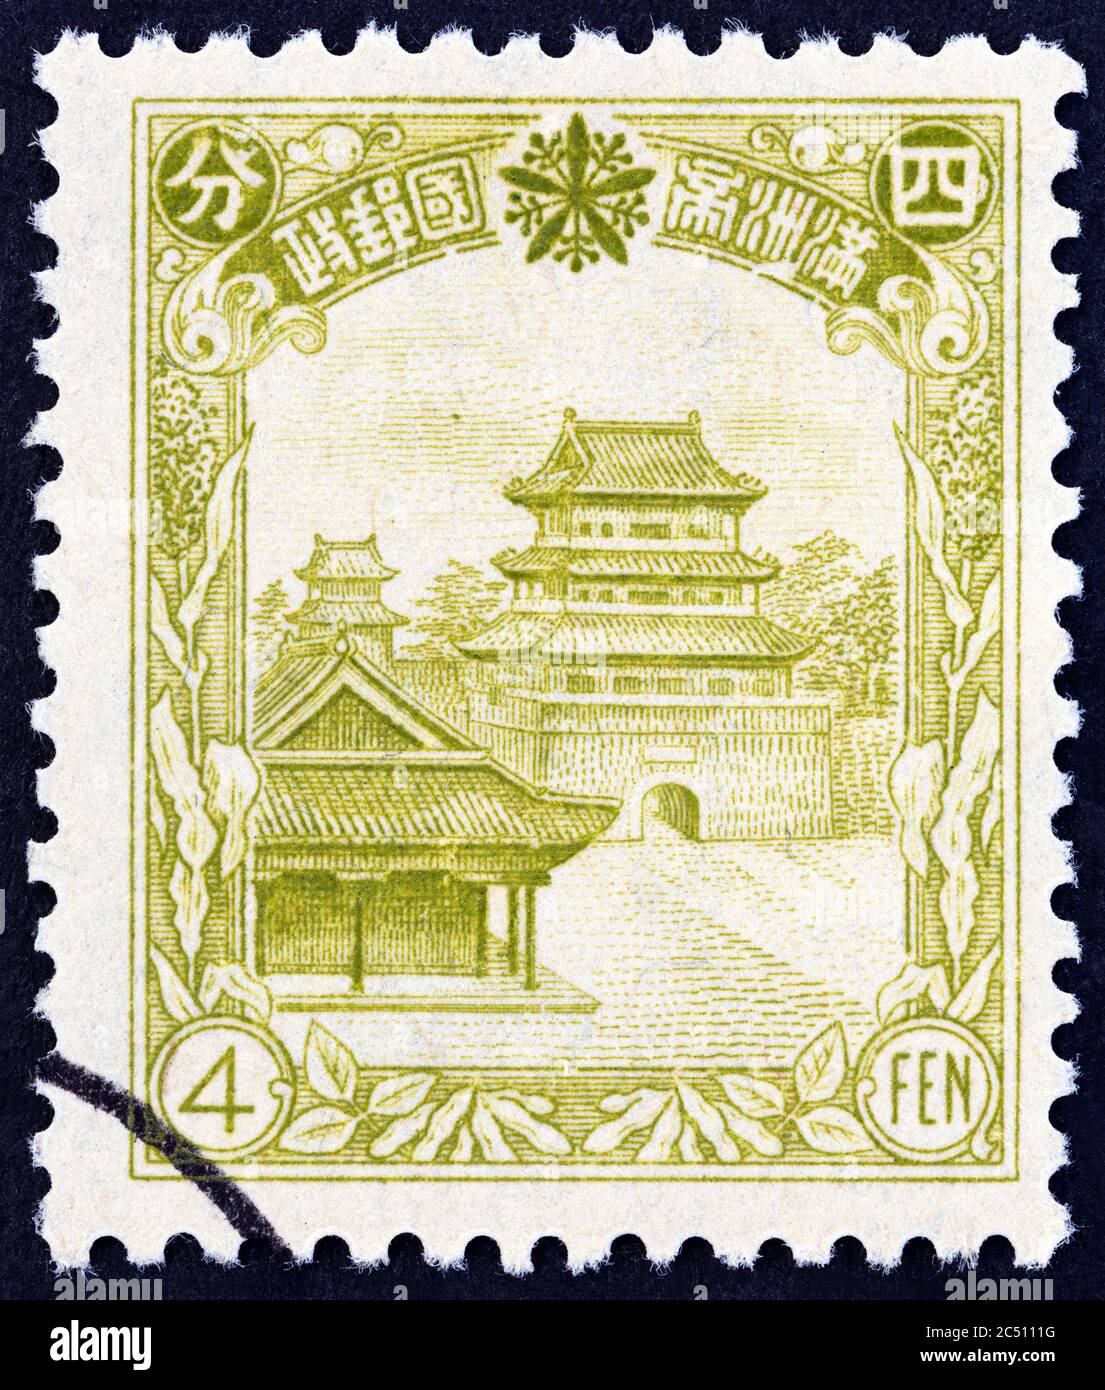 MANCHUKUO - UM 1936: Eine in China gedruckte Marke zeigt das Peiling Mausoleum der Qing-Dynastie in Mukden, um 1936. Stockfoto